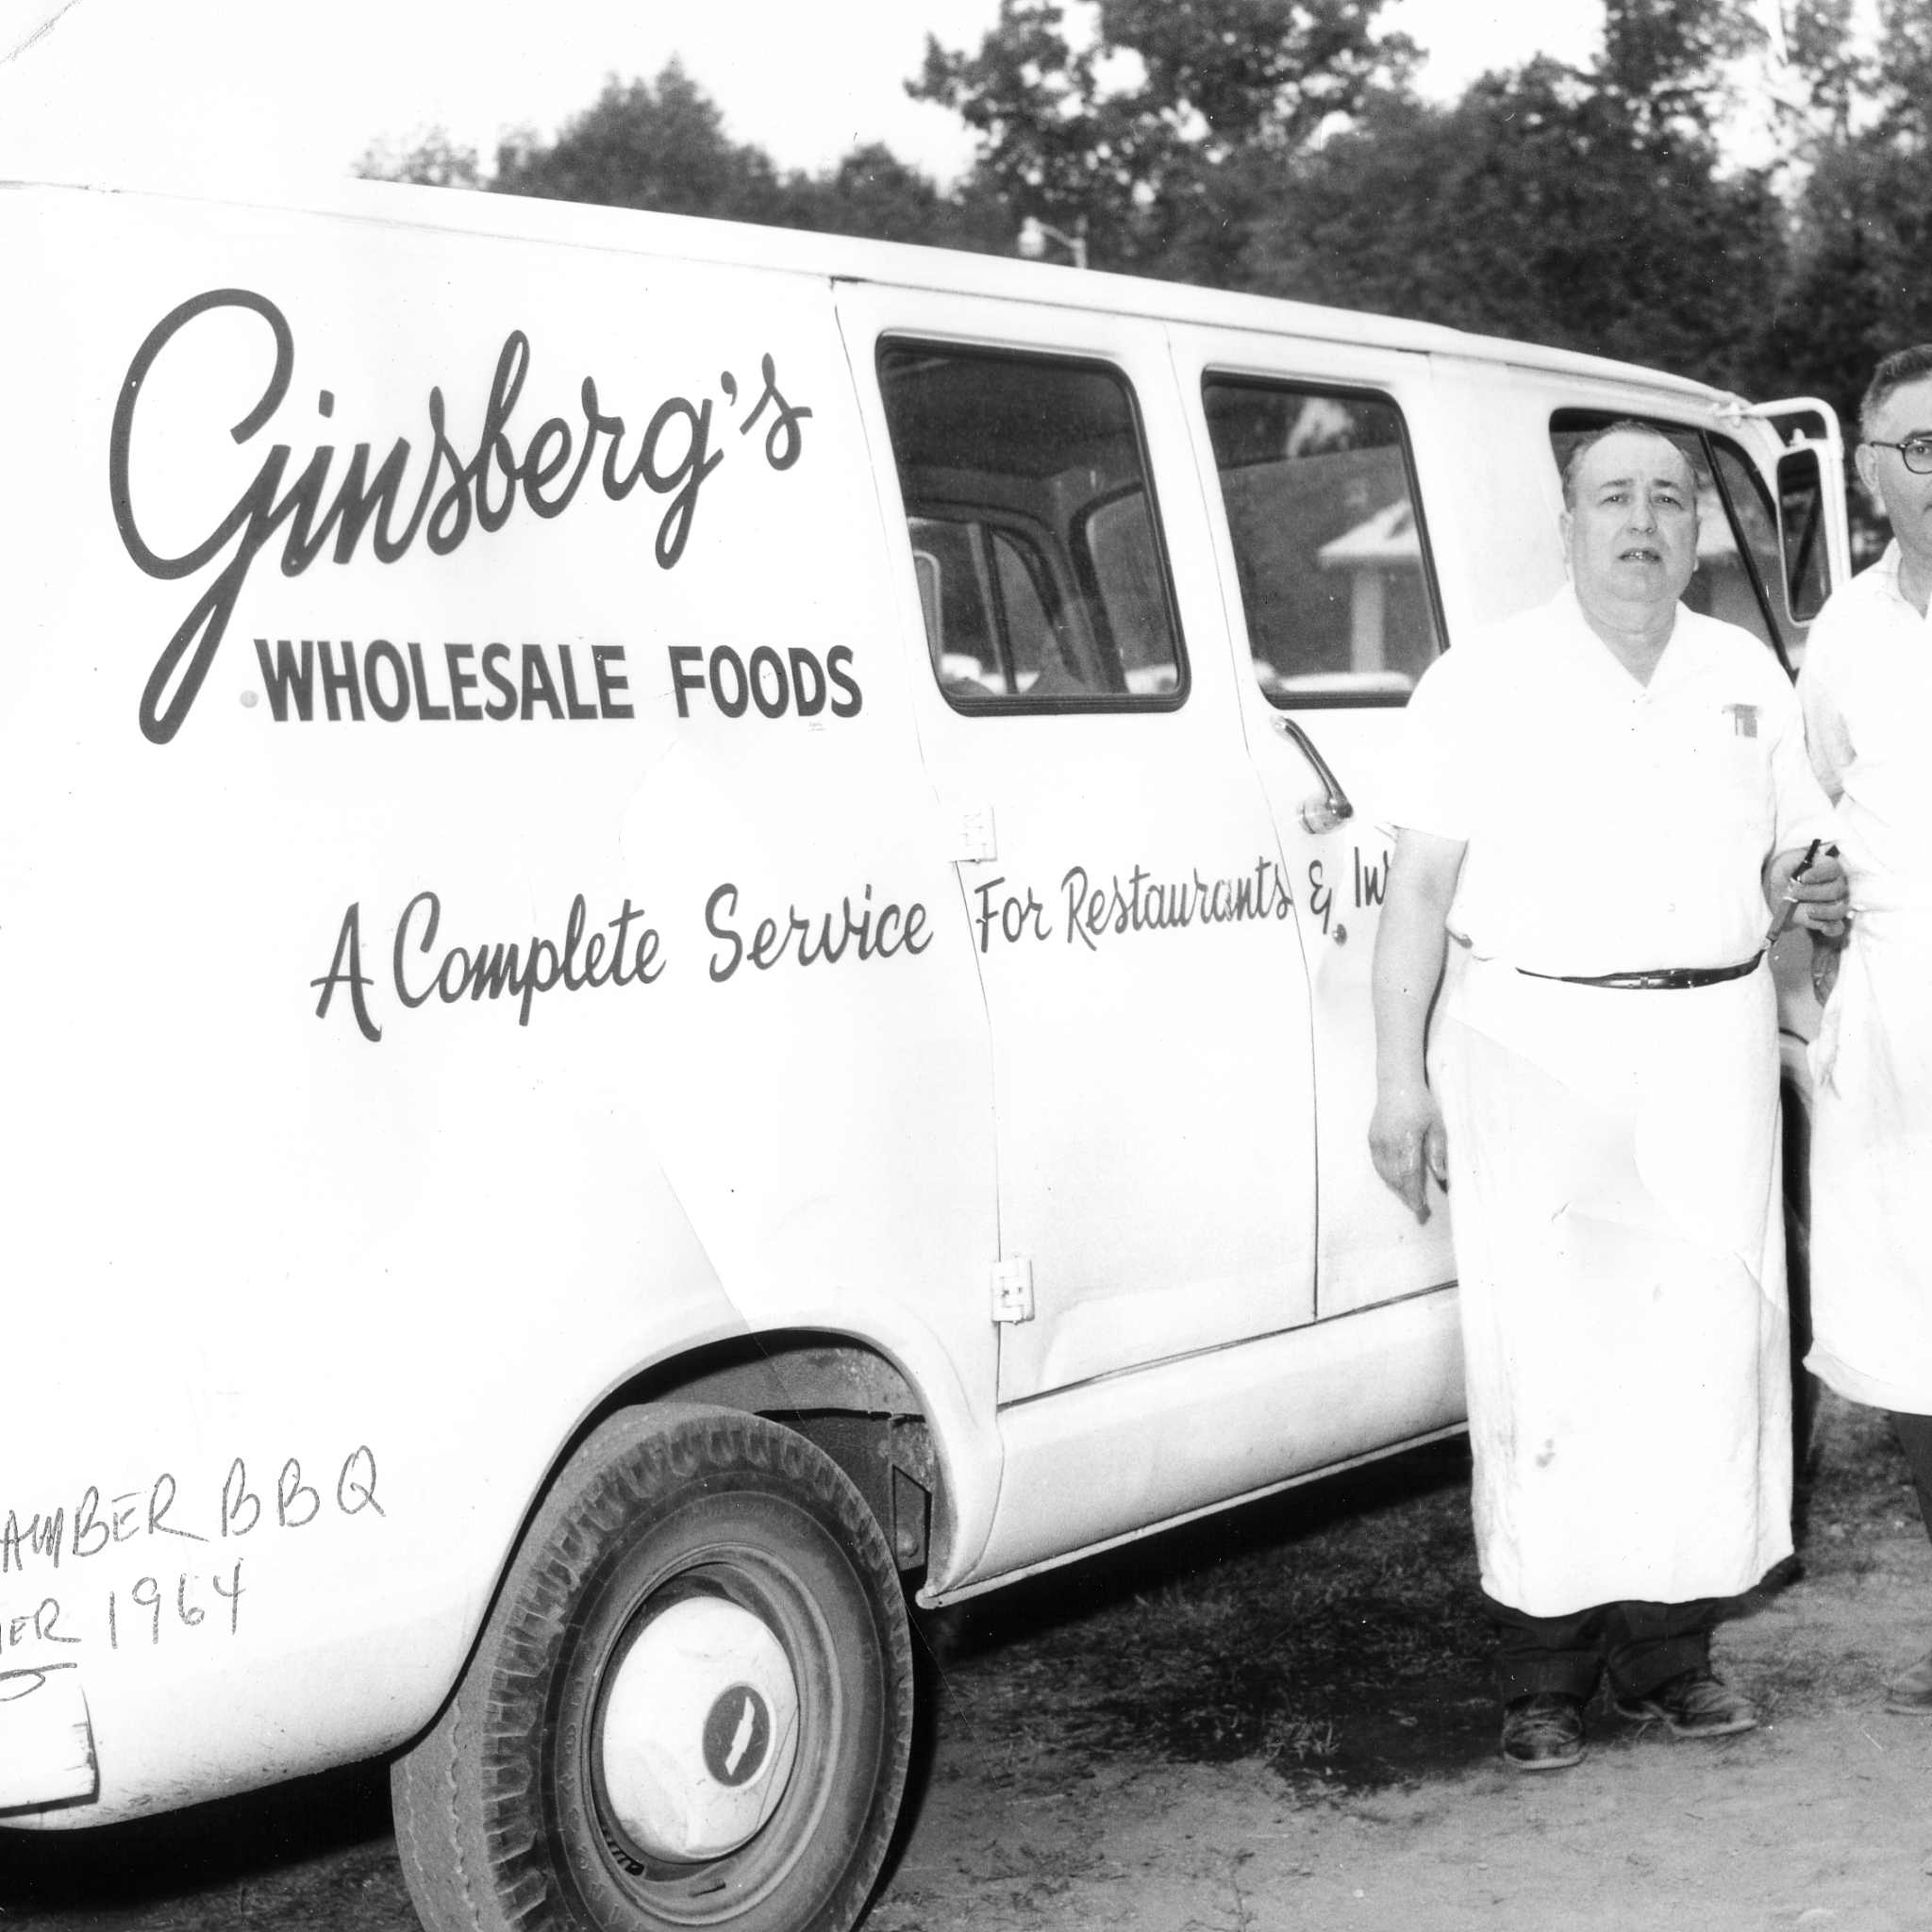 1964 Ginsberg's Van